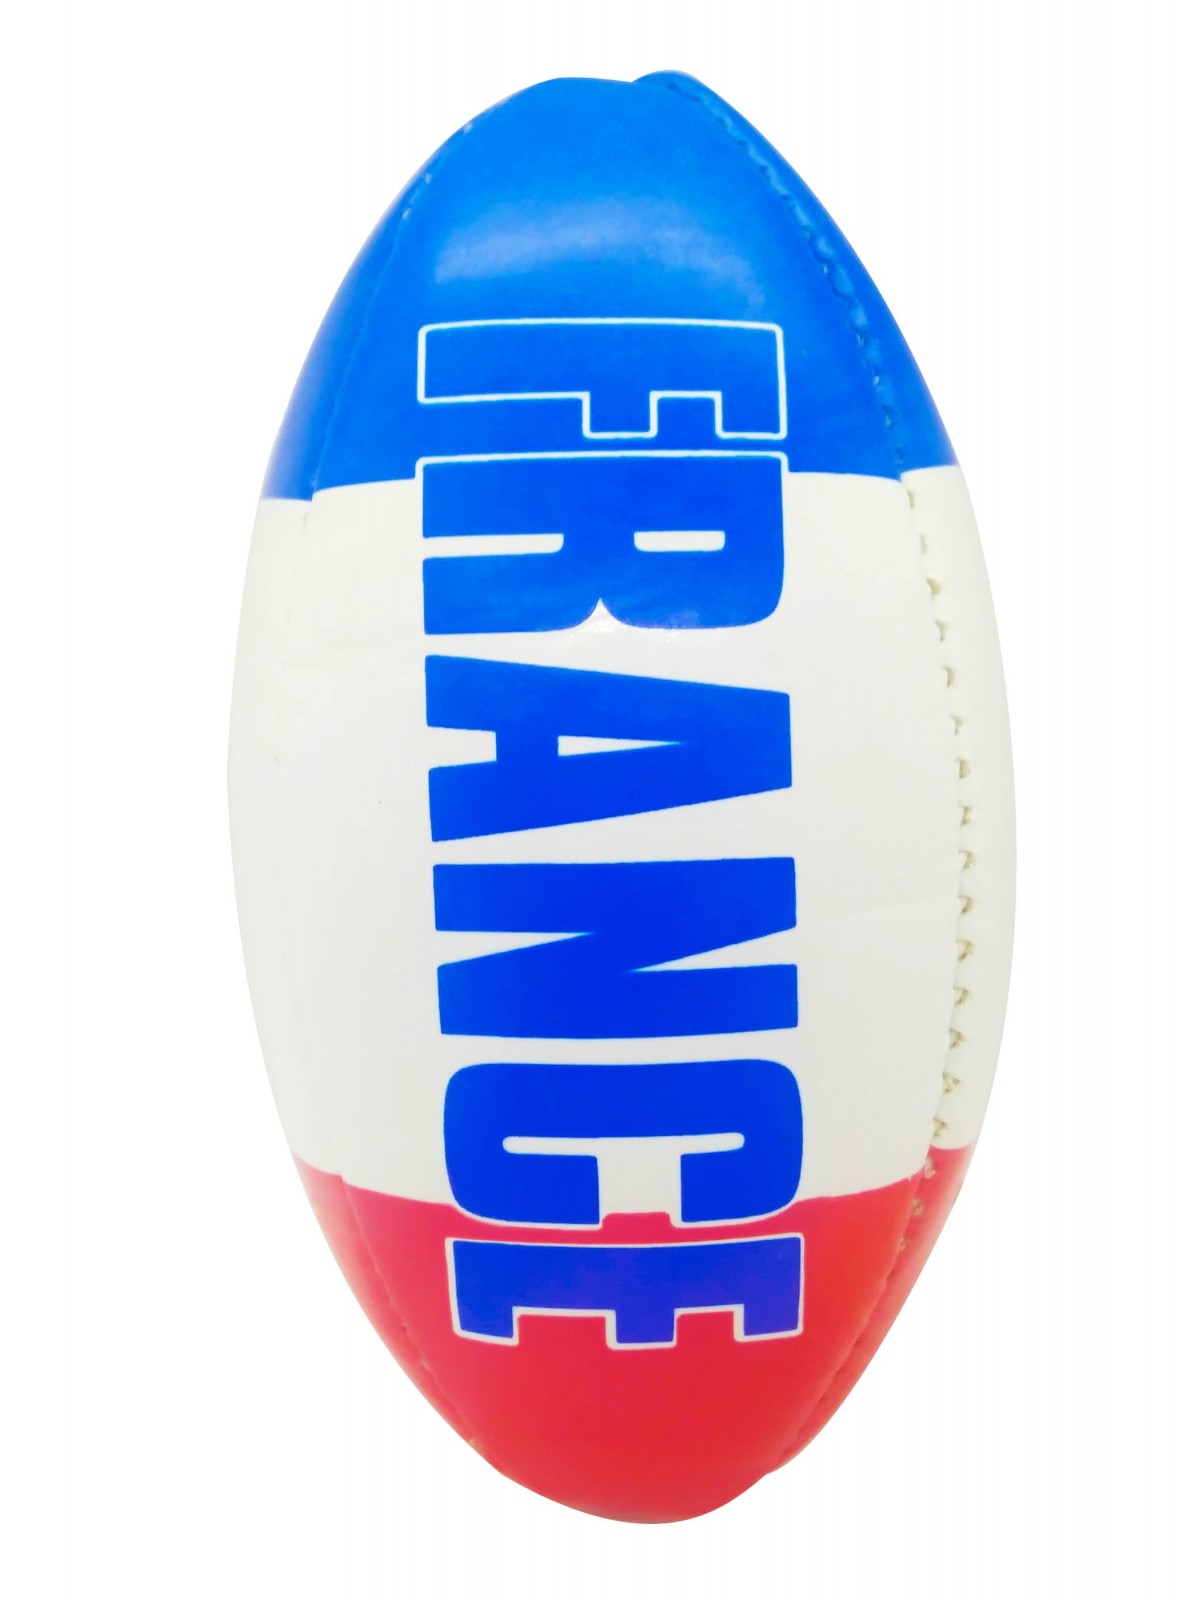 52-005 Ballon de rugby en cuir PVC taille officielle personnalisé